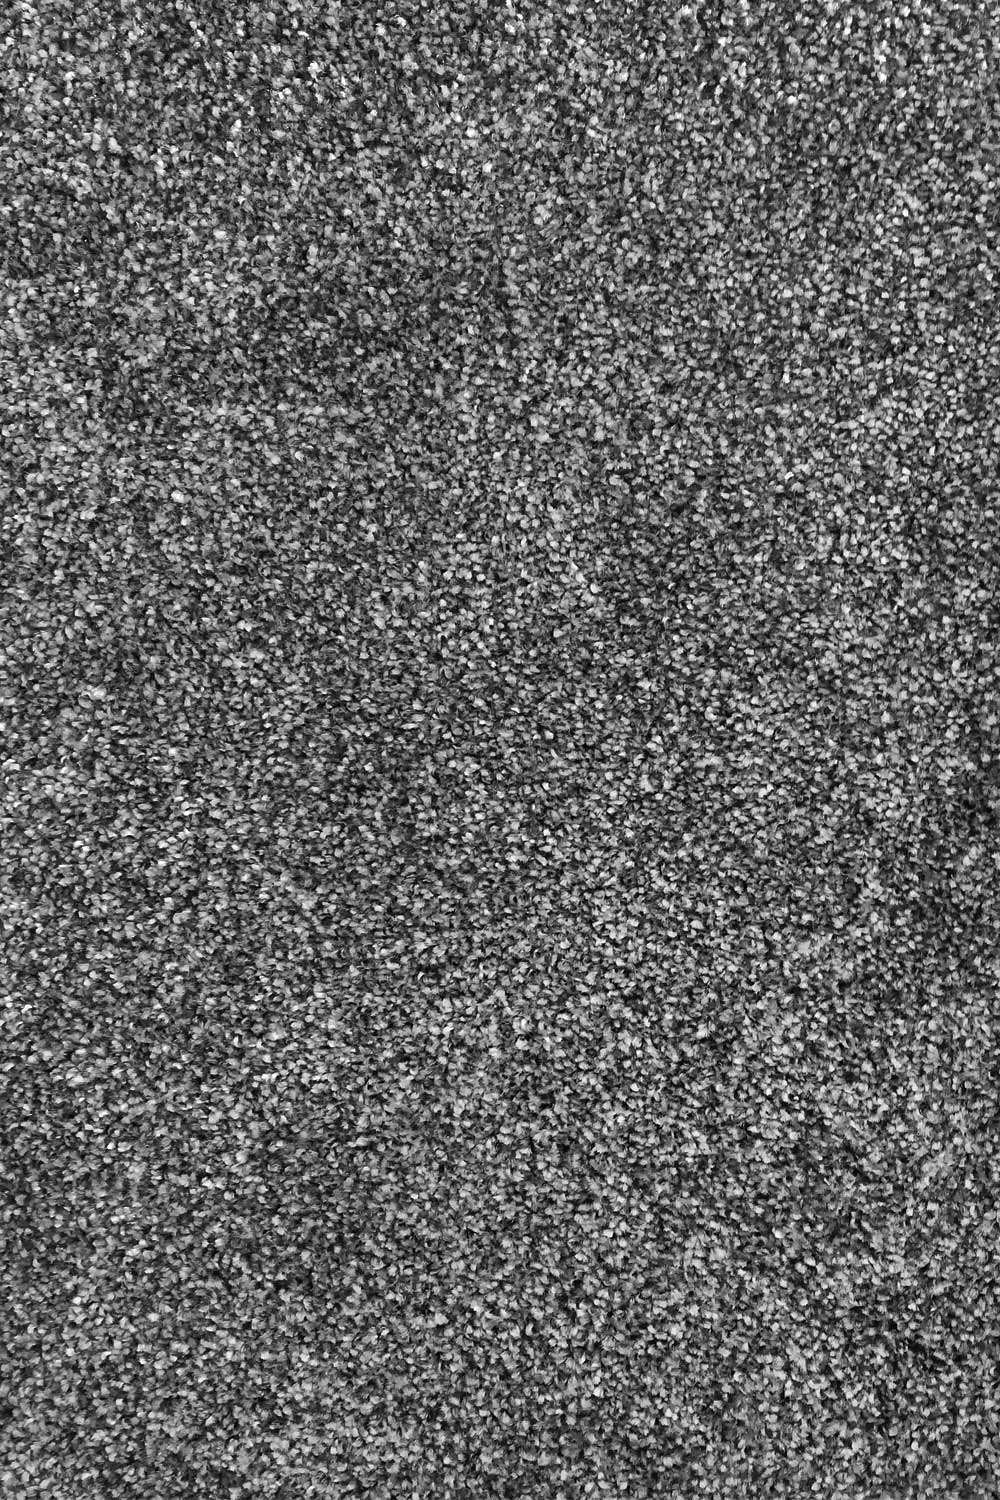 Metrážny koberec Dalesman 77 500 cm